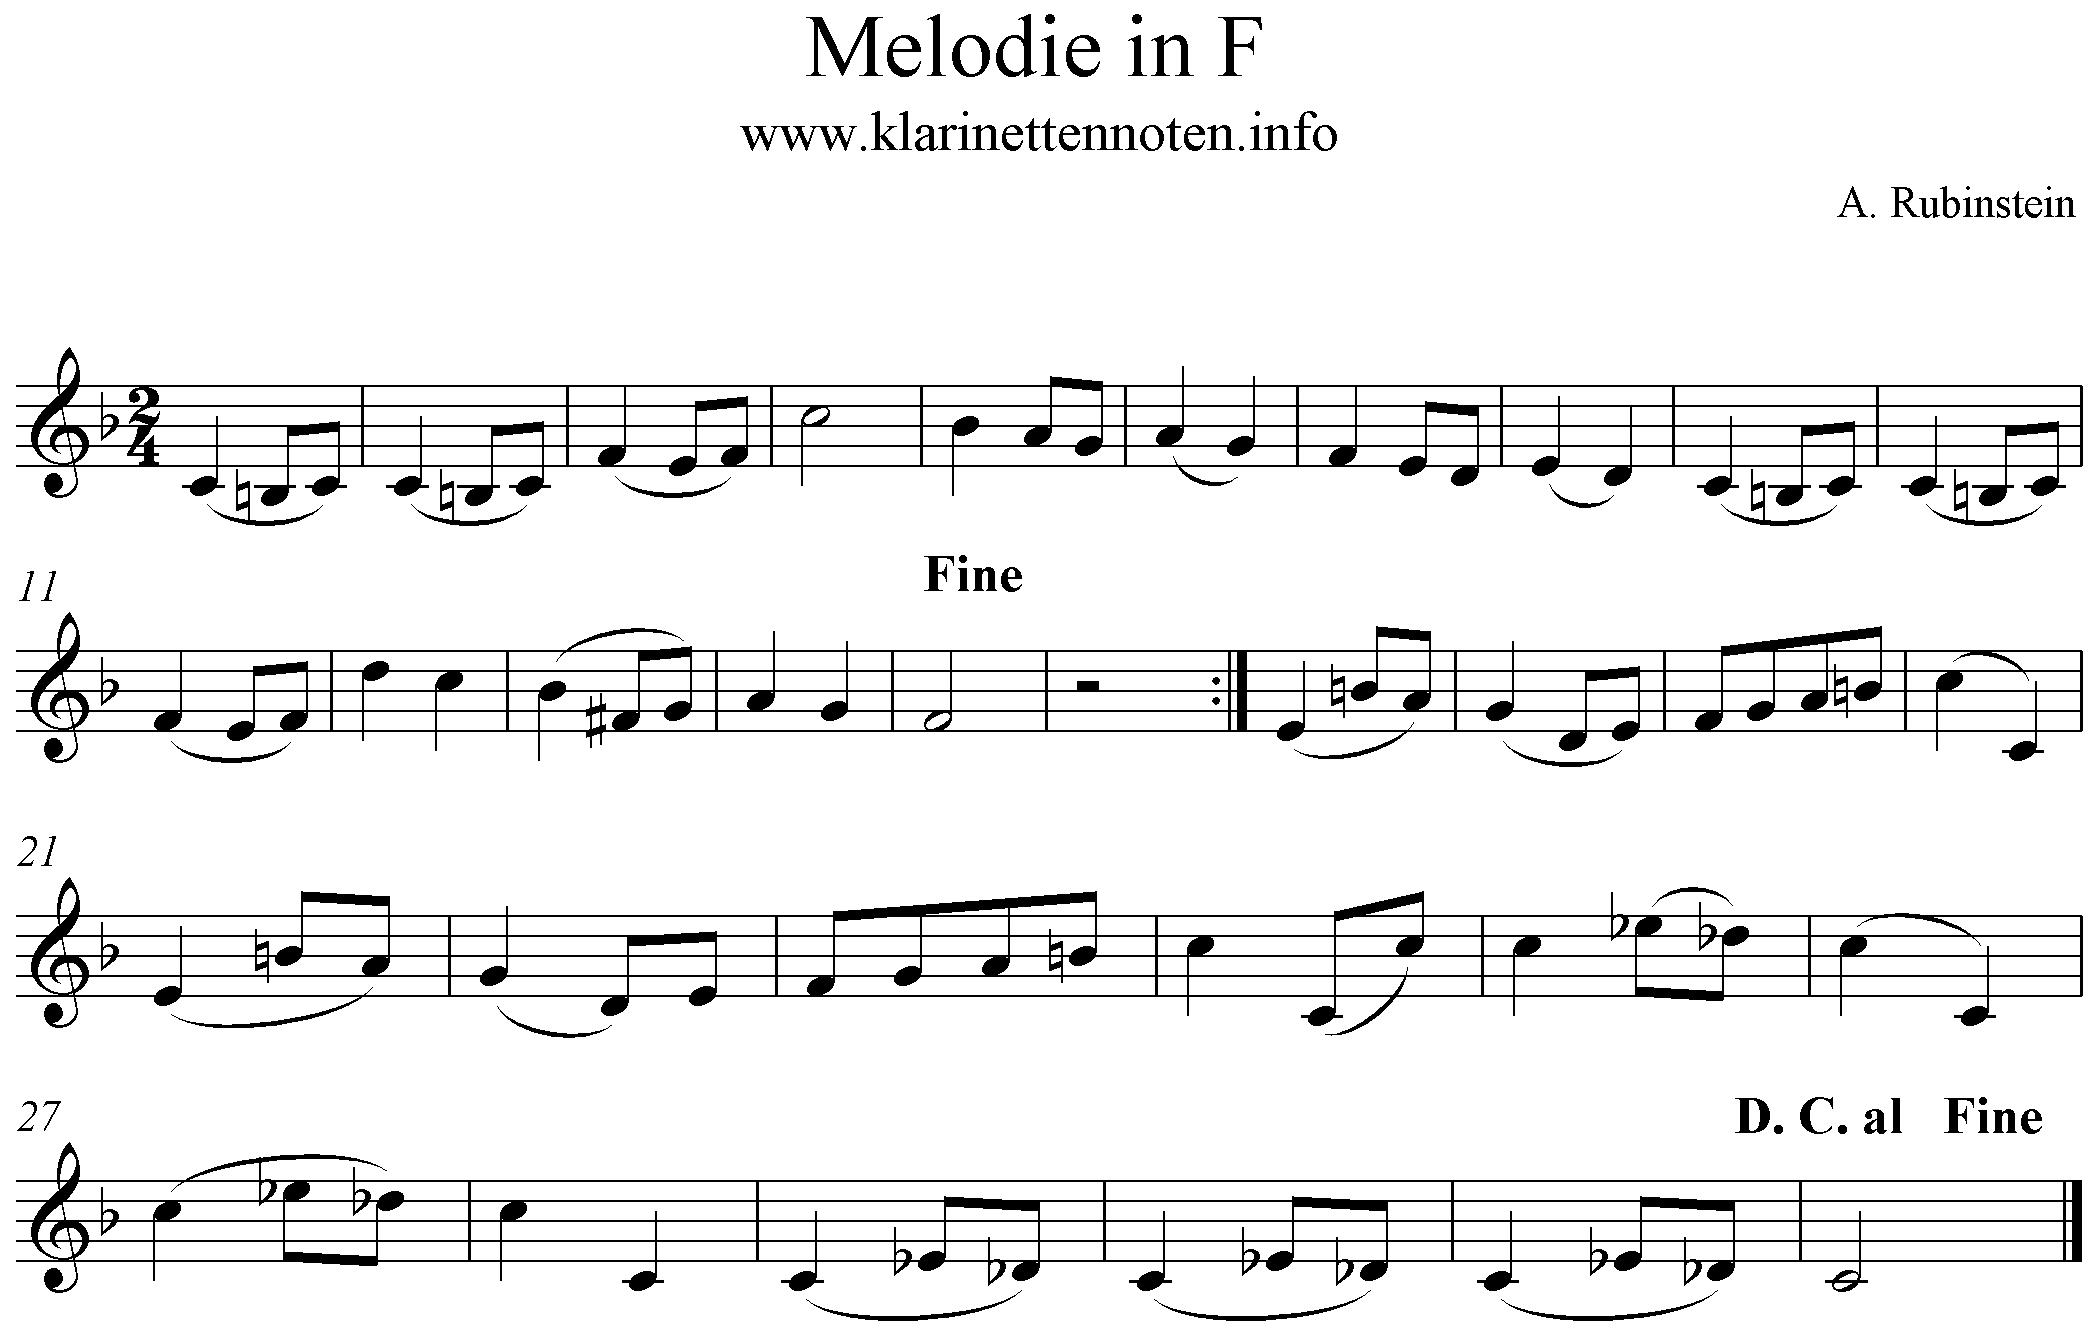 Melodie in F- Rubinstein, Clarinet, Klarinette